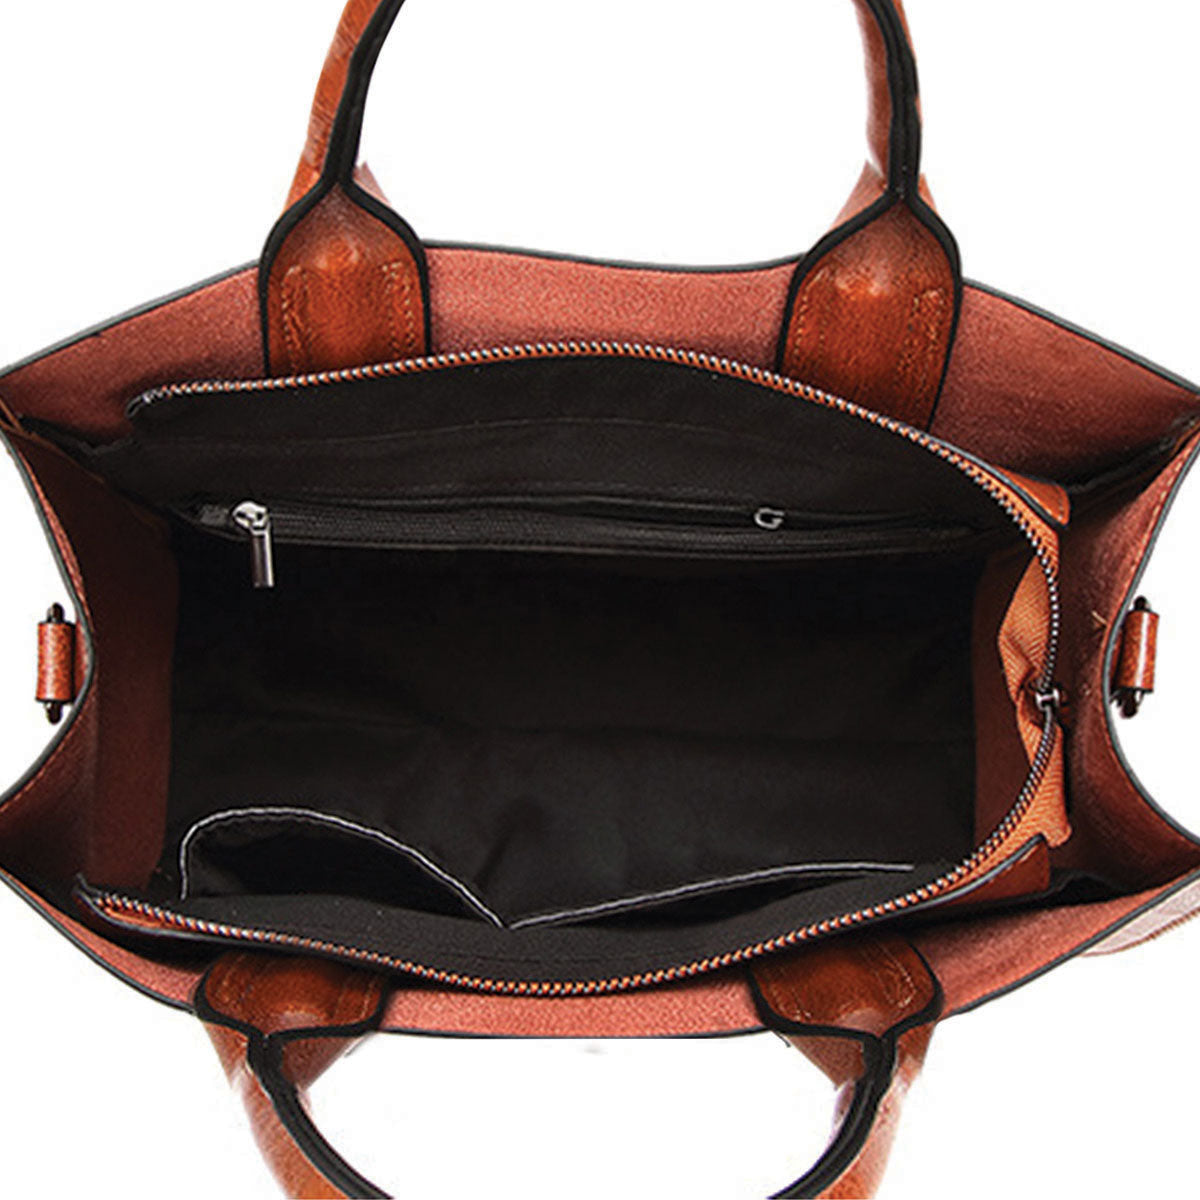 Your Best Companion - Shih Tzu Luxury Handbag V1